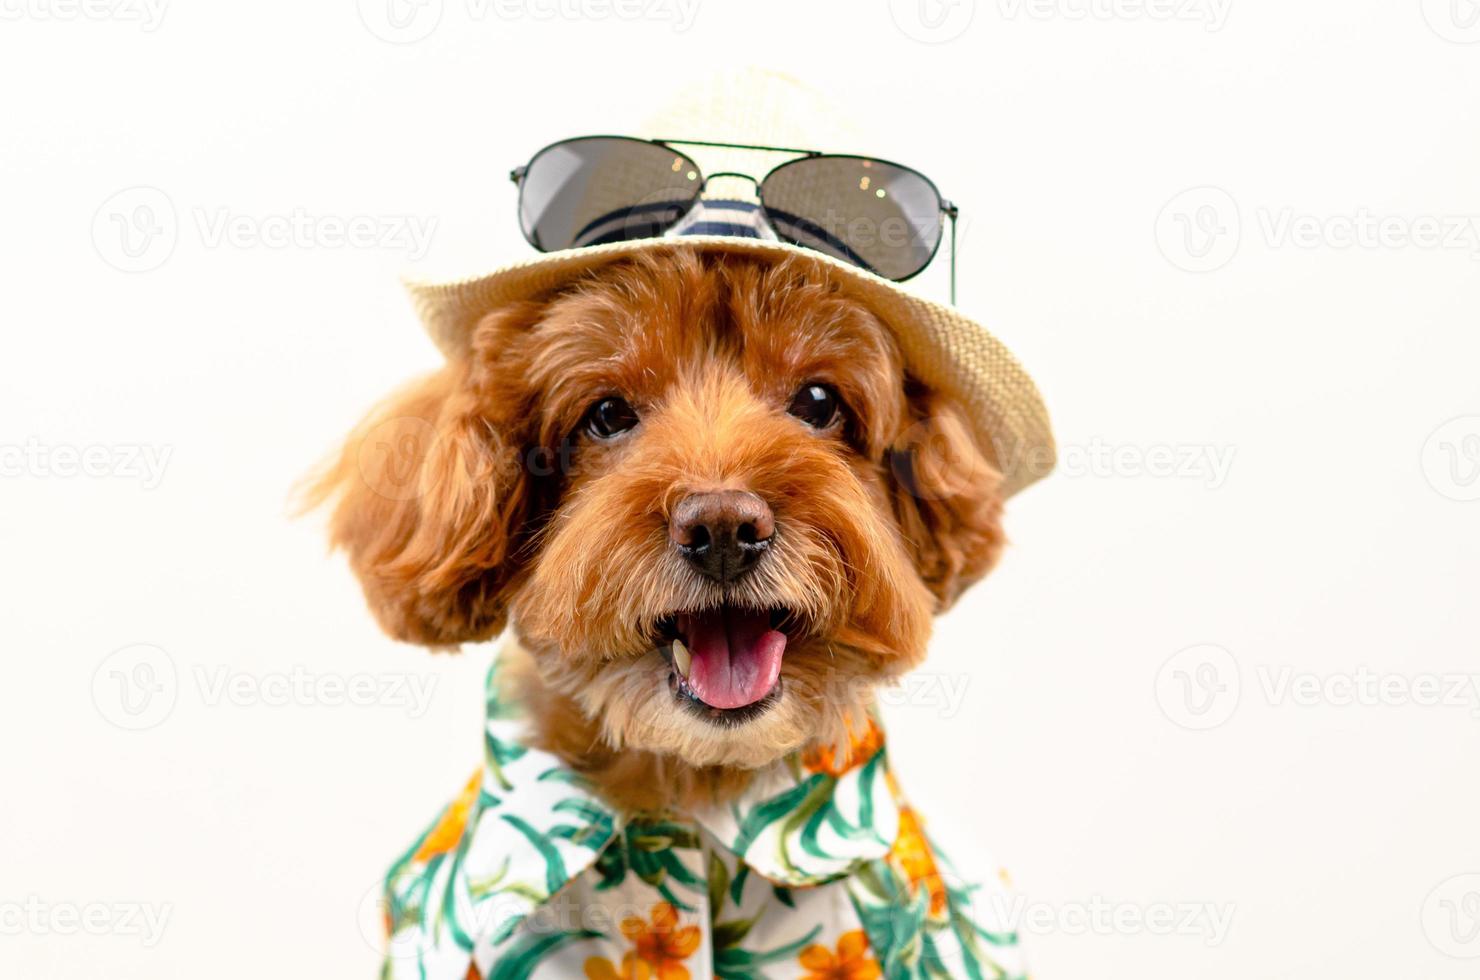 un adorable perro de caniche de juguete marrón sonriente lleva un sombrero con gafas de sol en la parte superior y un vestido hawaiano para la temporada de verano sobre fondo blanco. foto